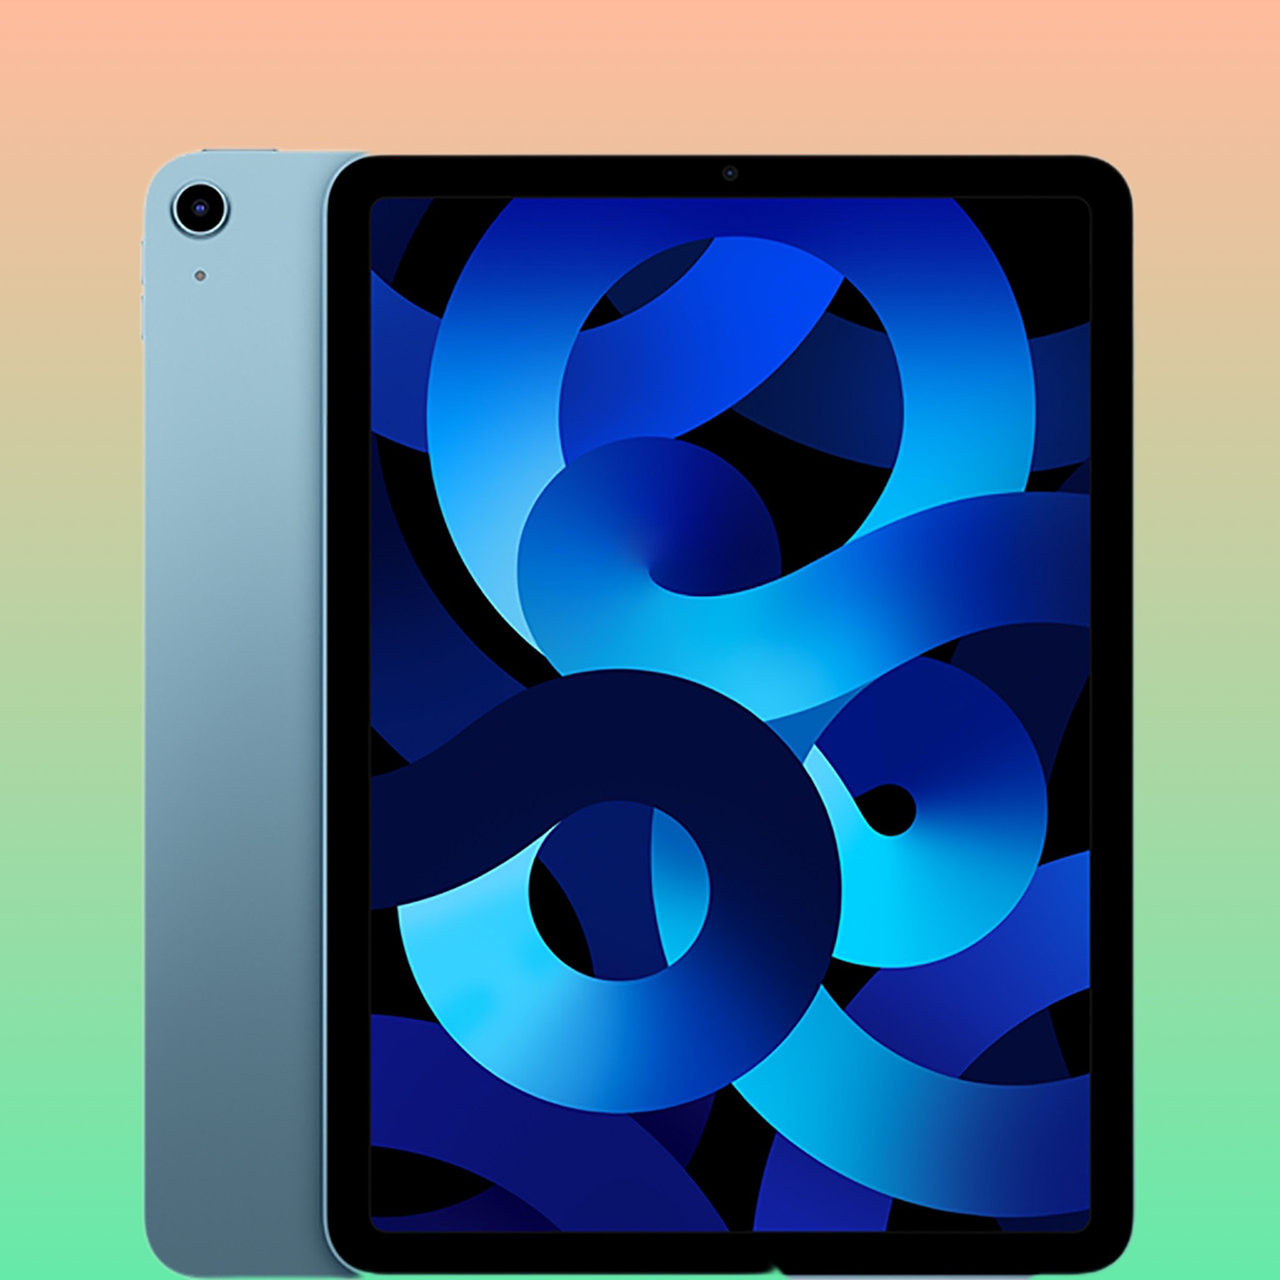 Kết hợp màu xanh dương cung cấp một giải pháp khác biệt và đẹp mắt cho người dùng đang tìm kiếm thiết bị công nghệ sang trọng. Hãy xem hình ảnh để khám phá thiết kế đẹp mắt của iPad Air